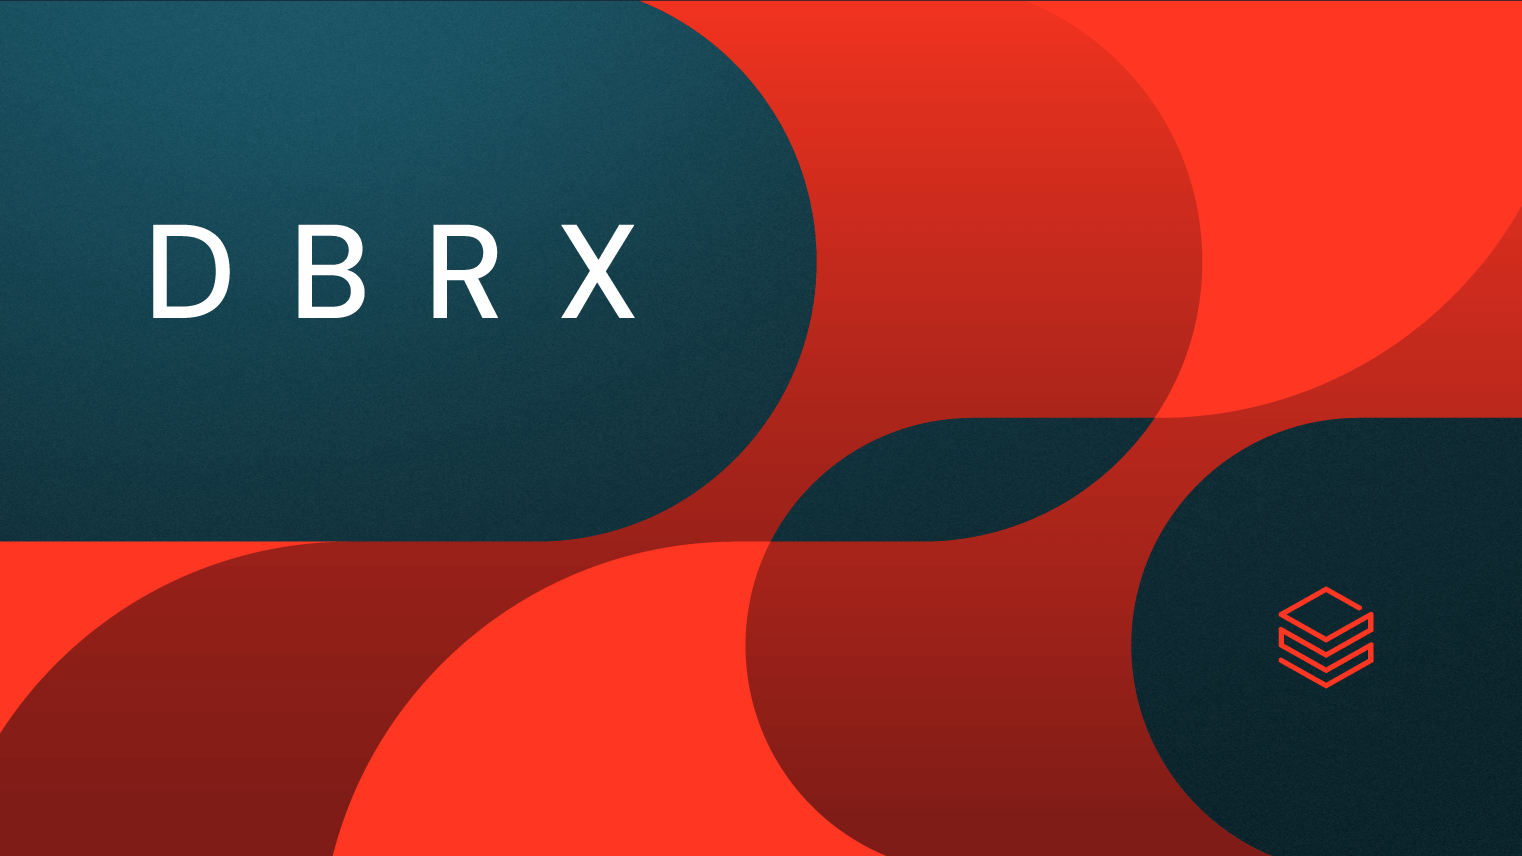 DBRX: New open language model outperforms Elon Musk's Grok-1